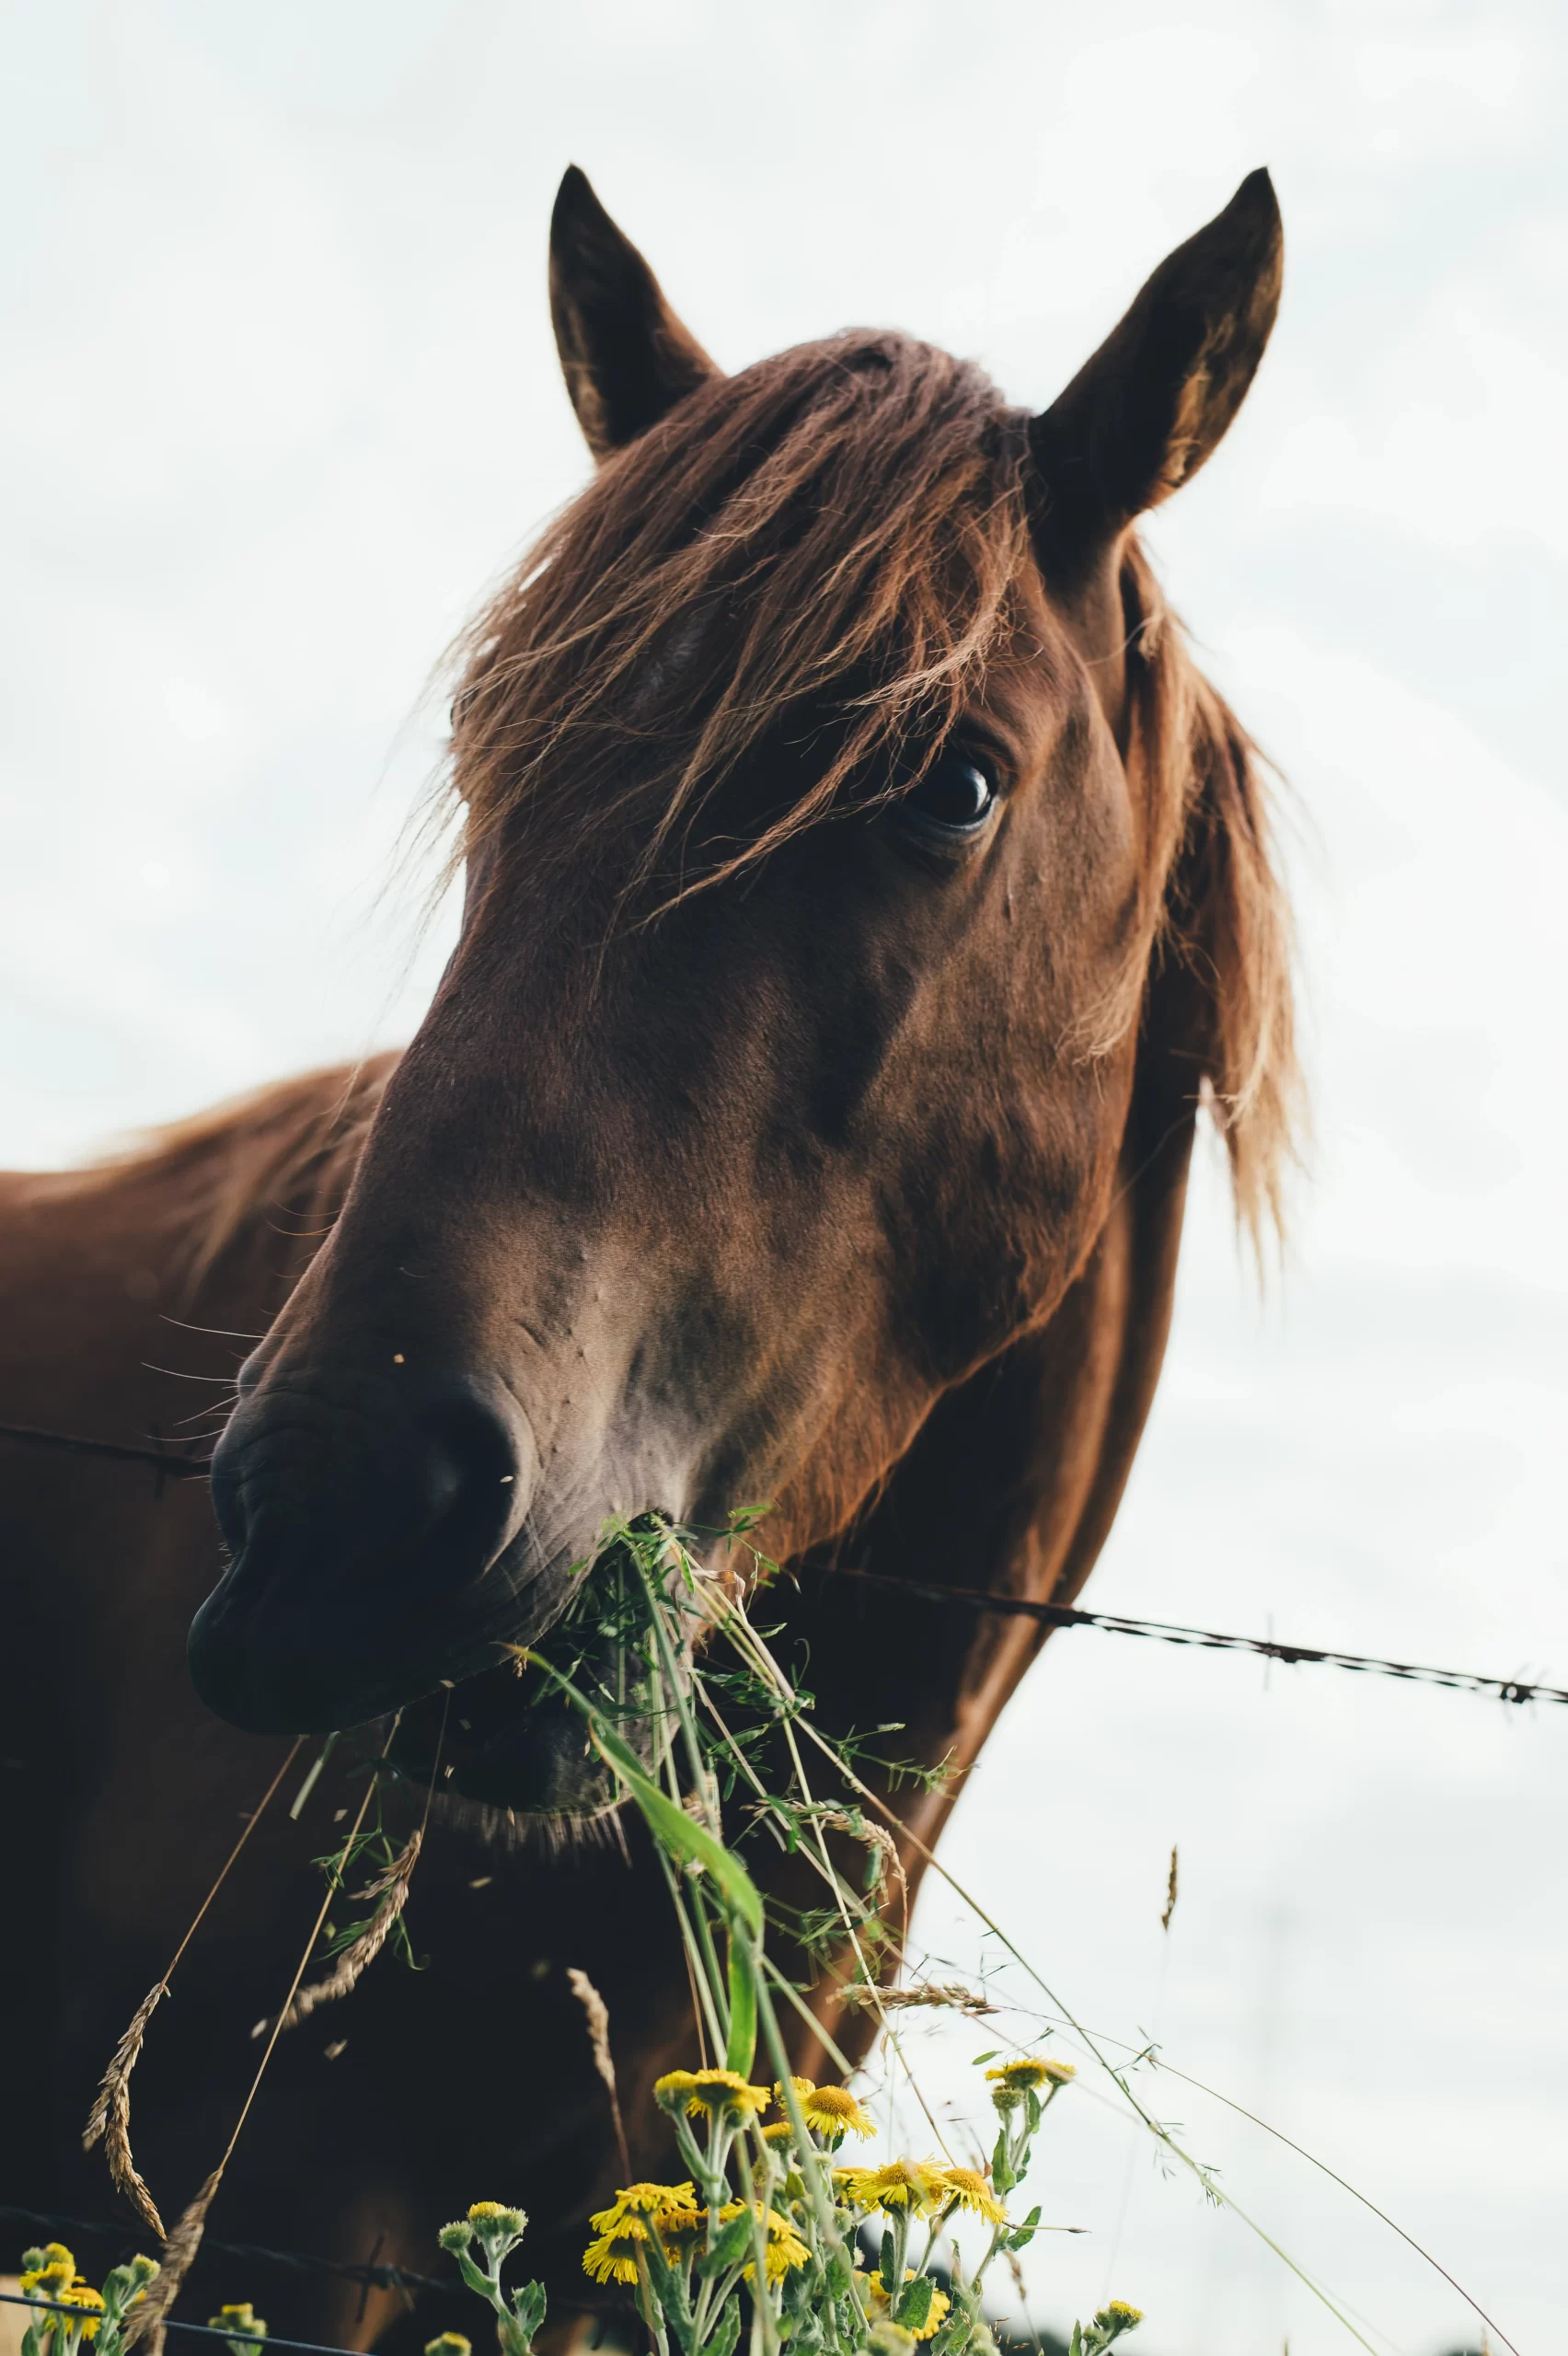 annie-spratt-Mare Horse at fencline chewing on wildflowers-unsplash